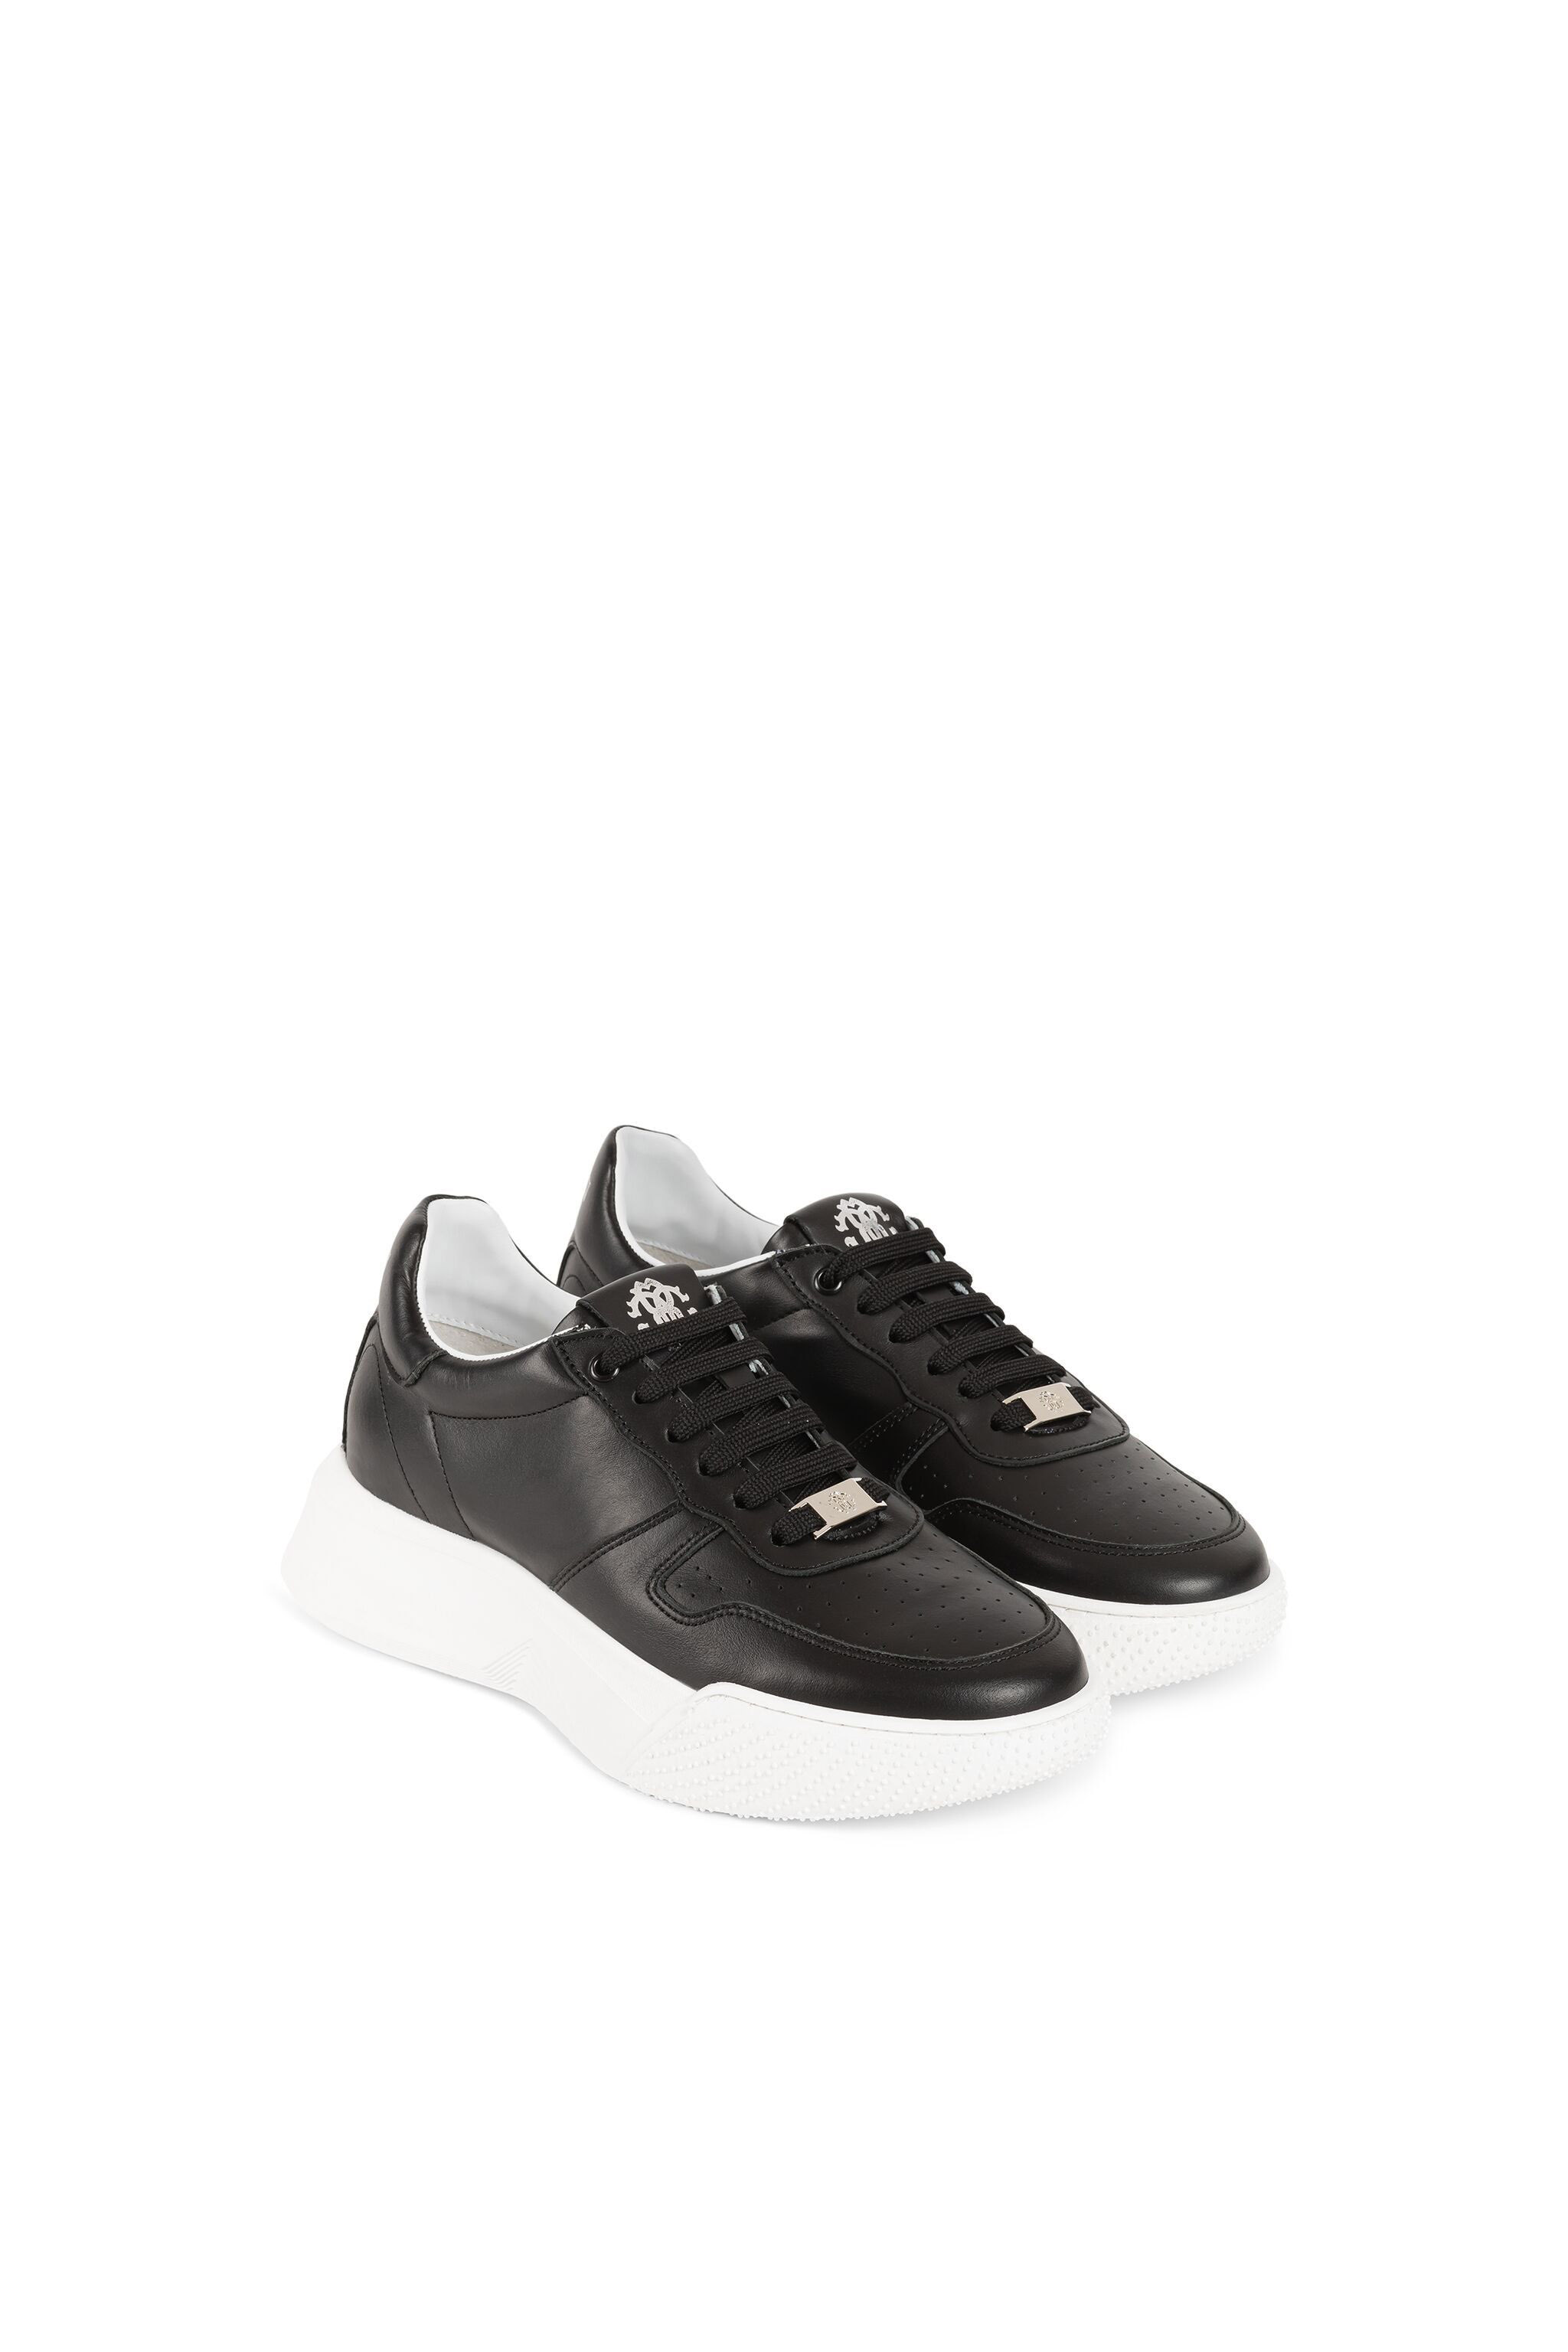 Buy Men Black Casual Shoes Online - 311194 | Louis Philippe